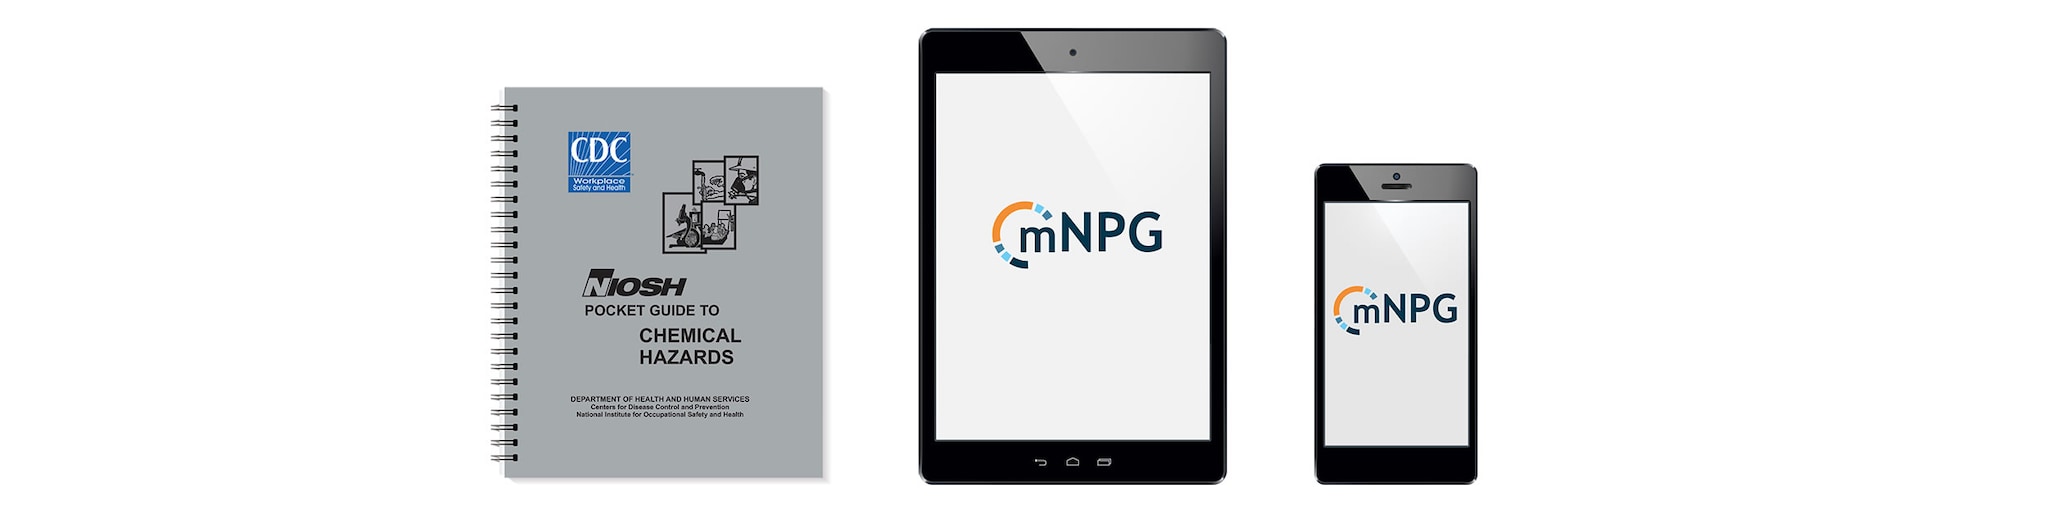 Pocket guide document, pocket guide app on tablet, and pocket guide app on mobile smart phone